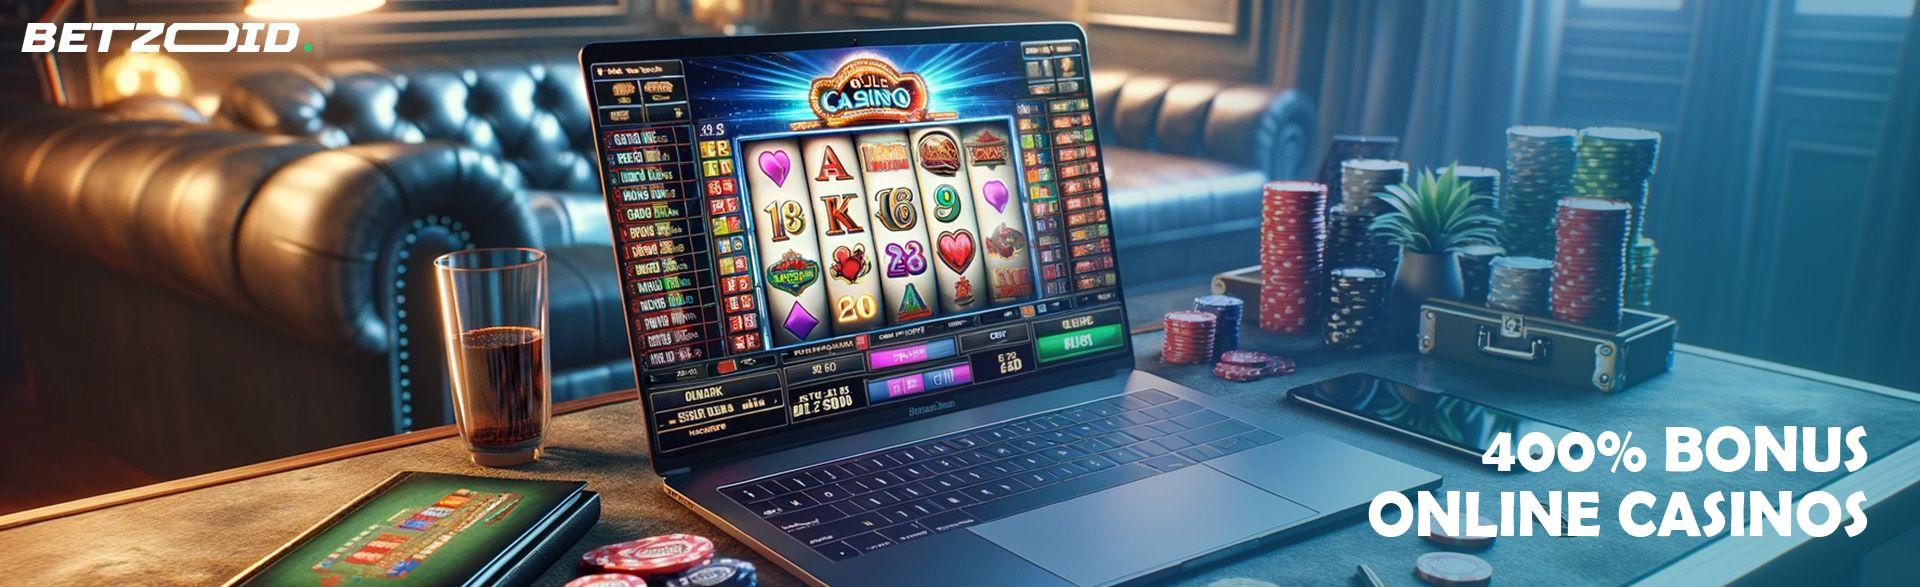 400% Bonus Online Casinos.